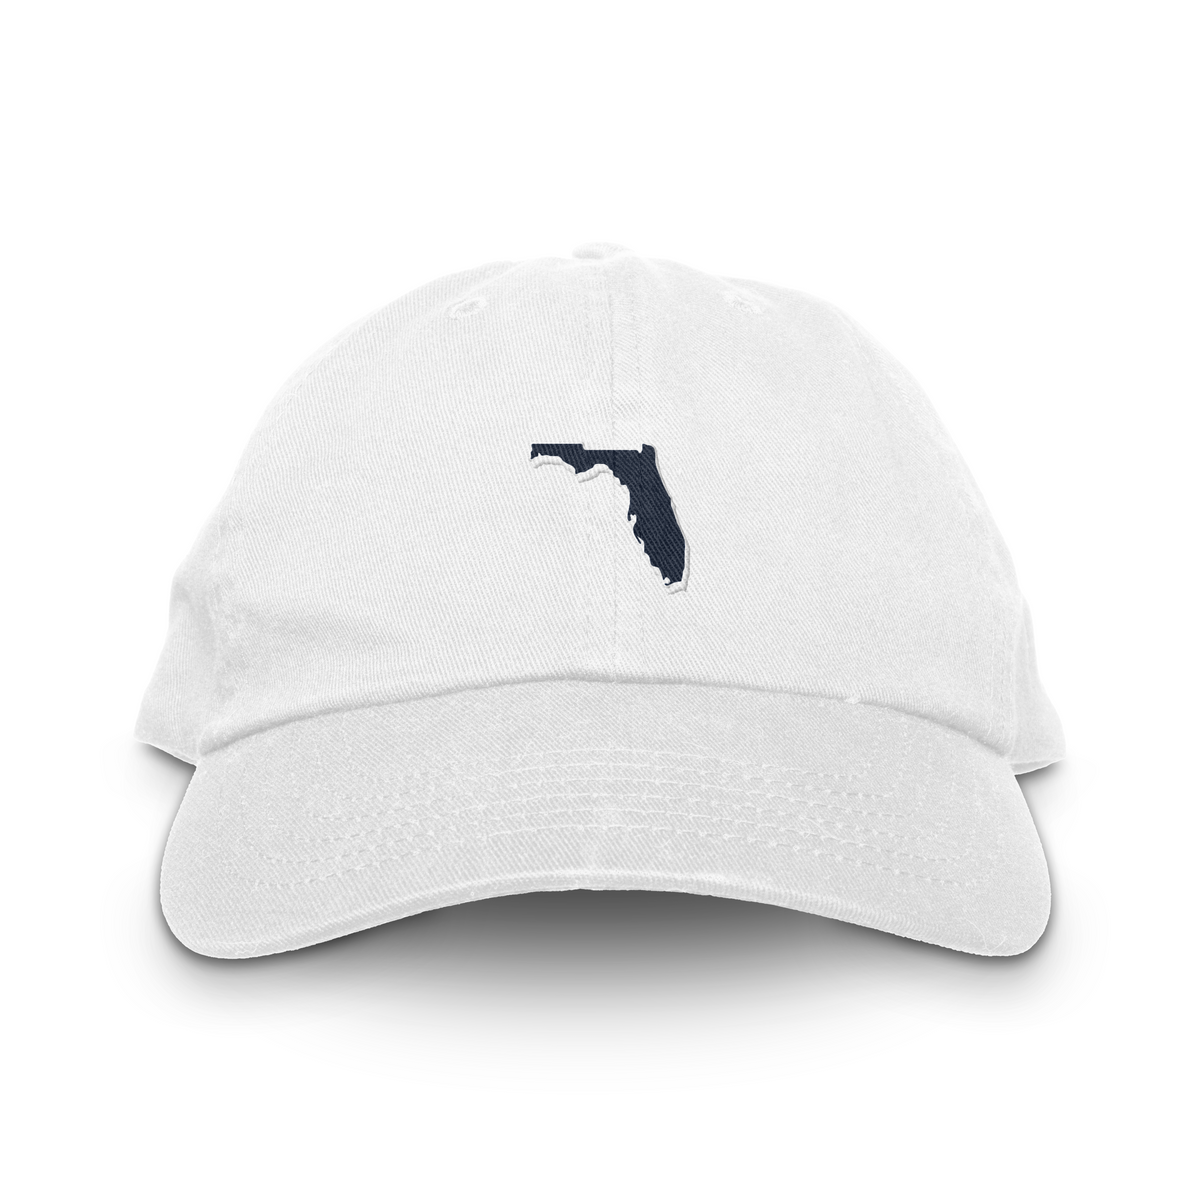 Florida Dad Hat